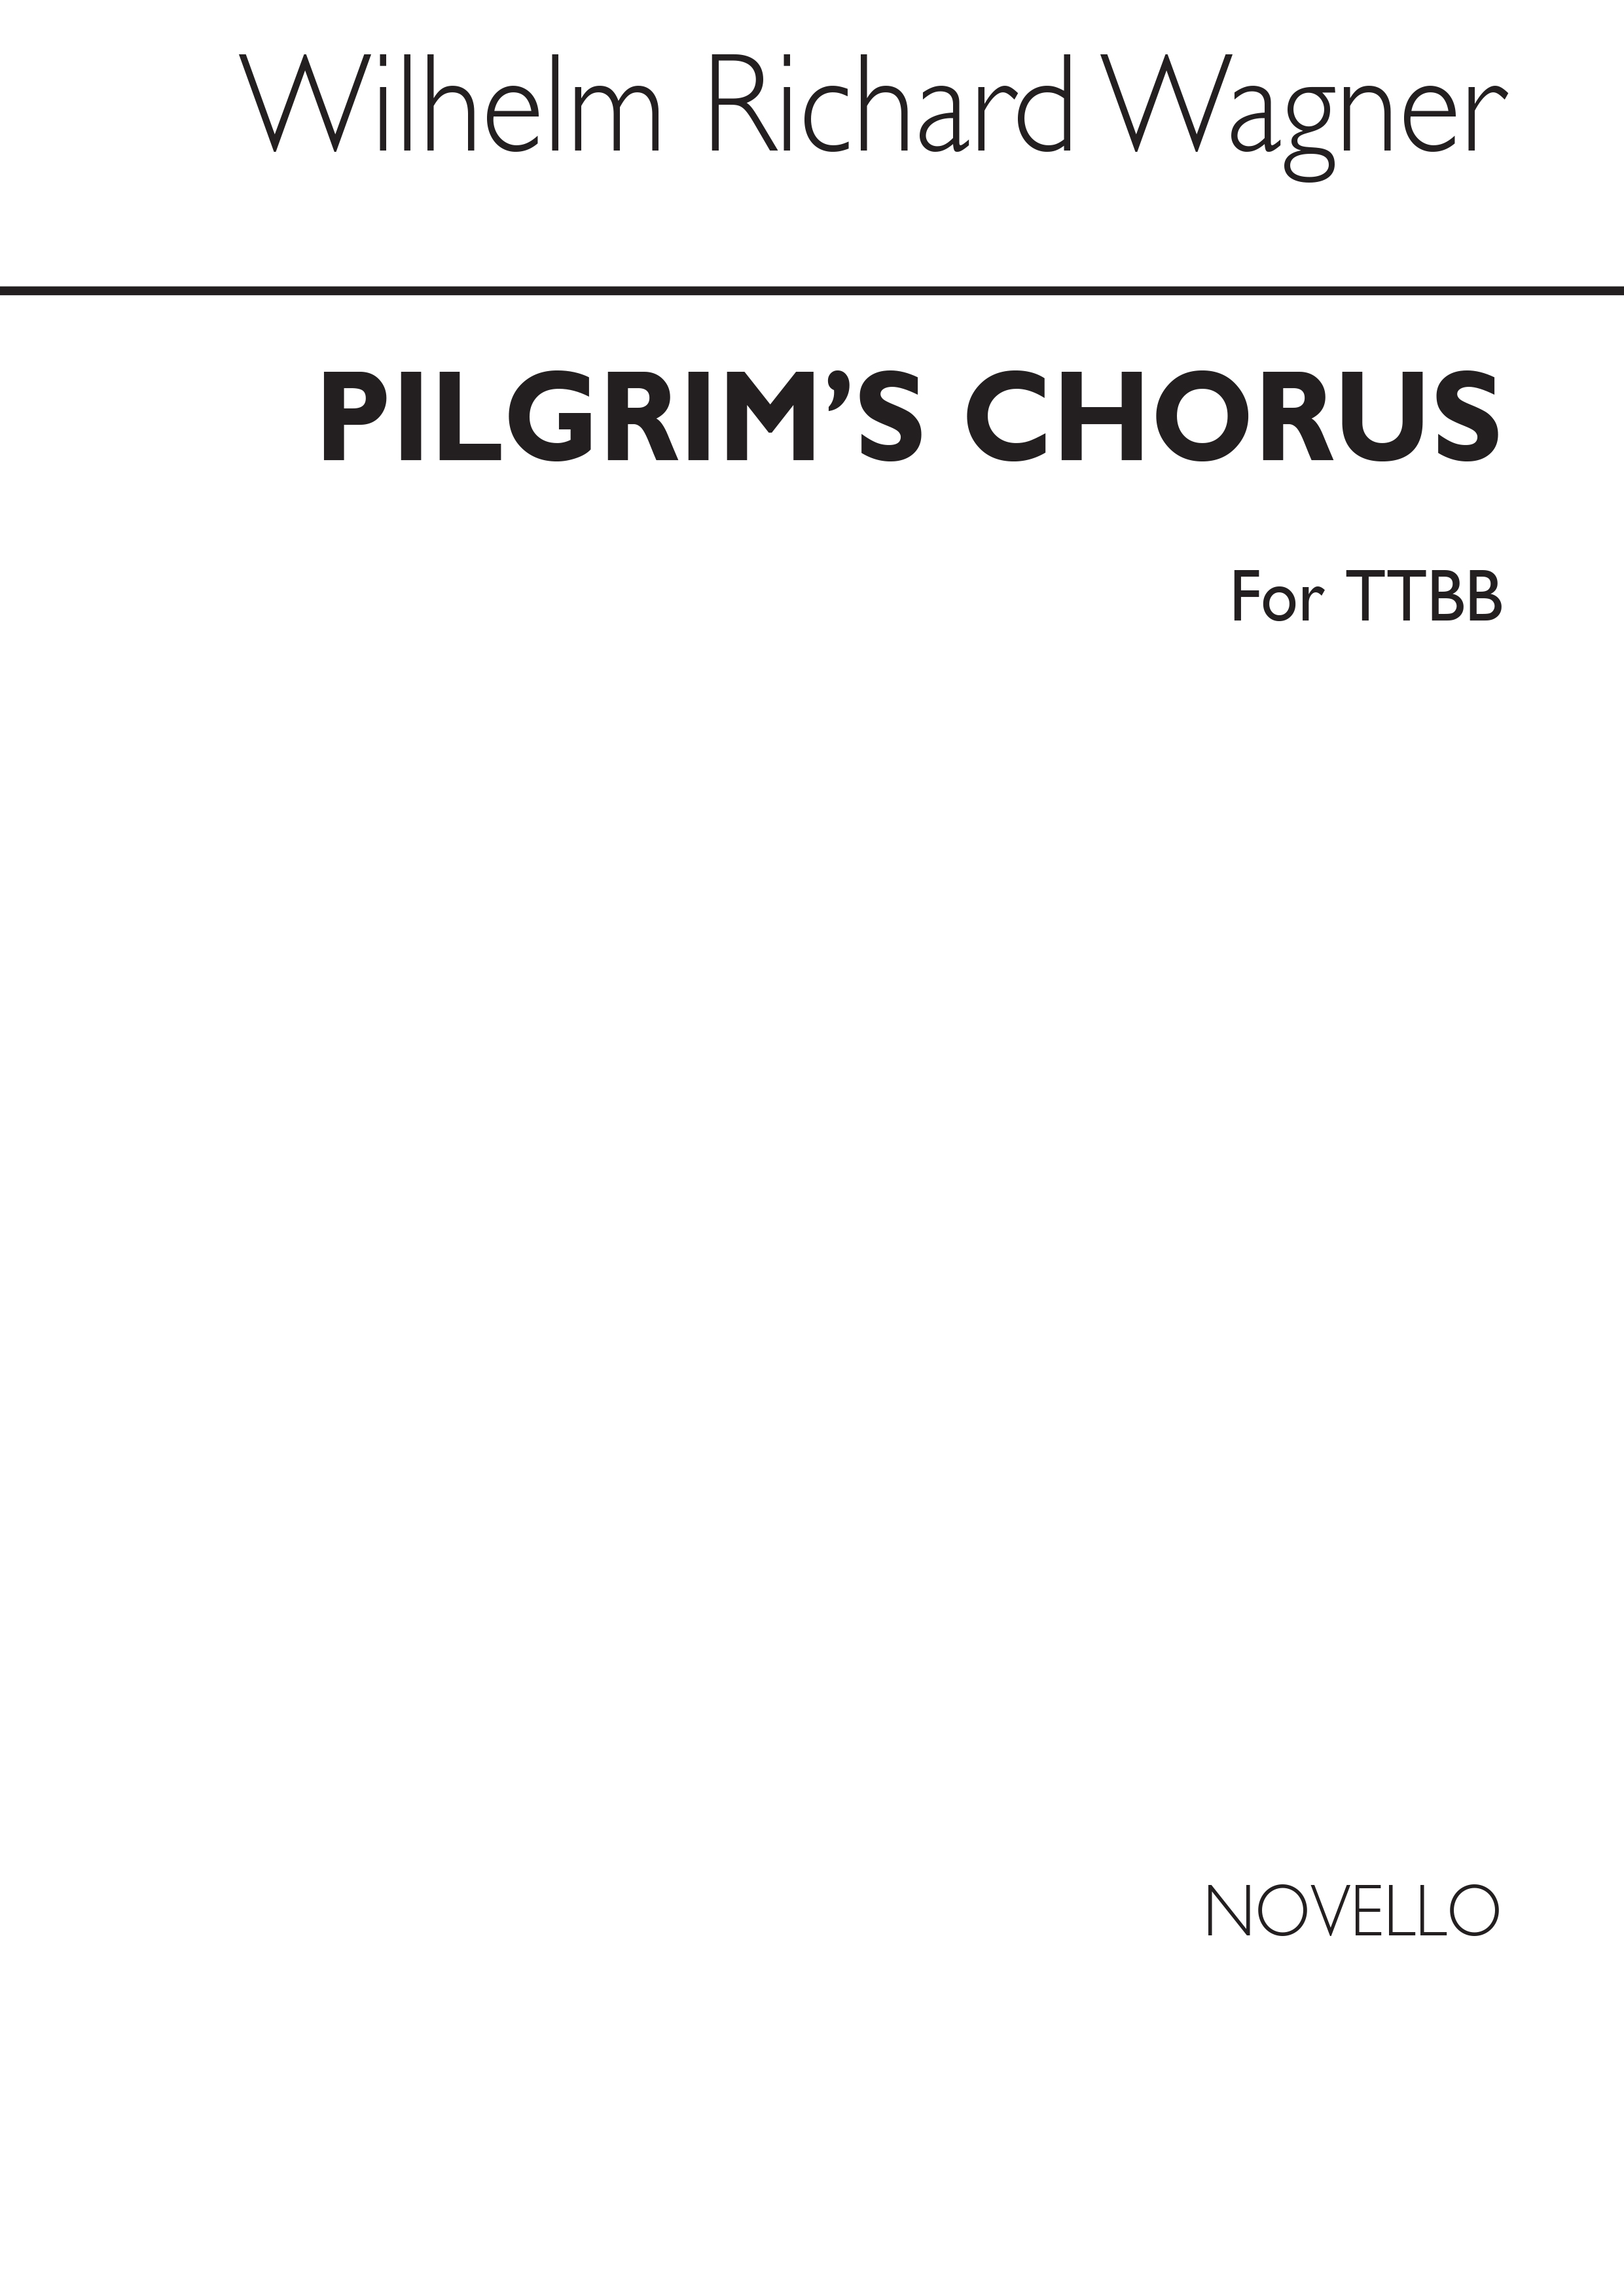 Richard Wagner: Pilgrim's Chorus (Tannhauser) TTBB